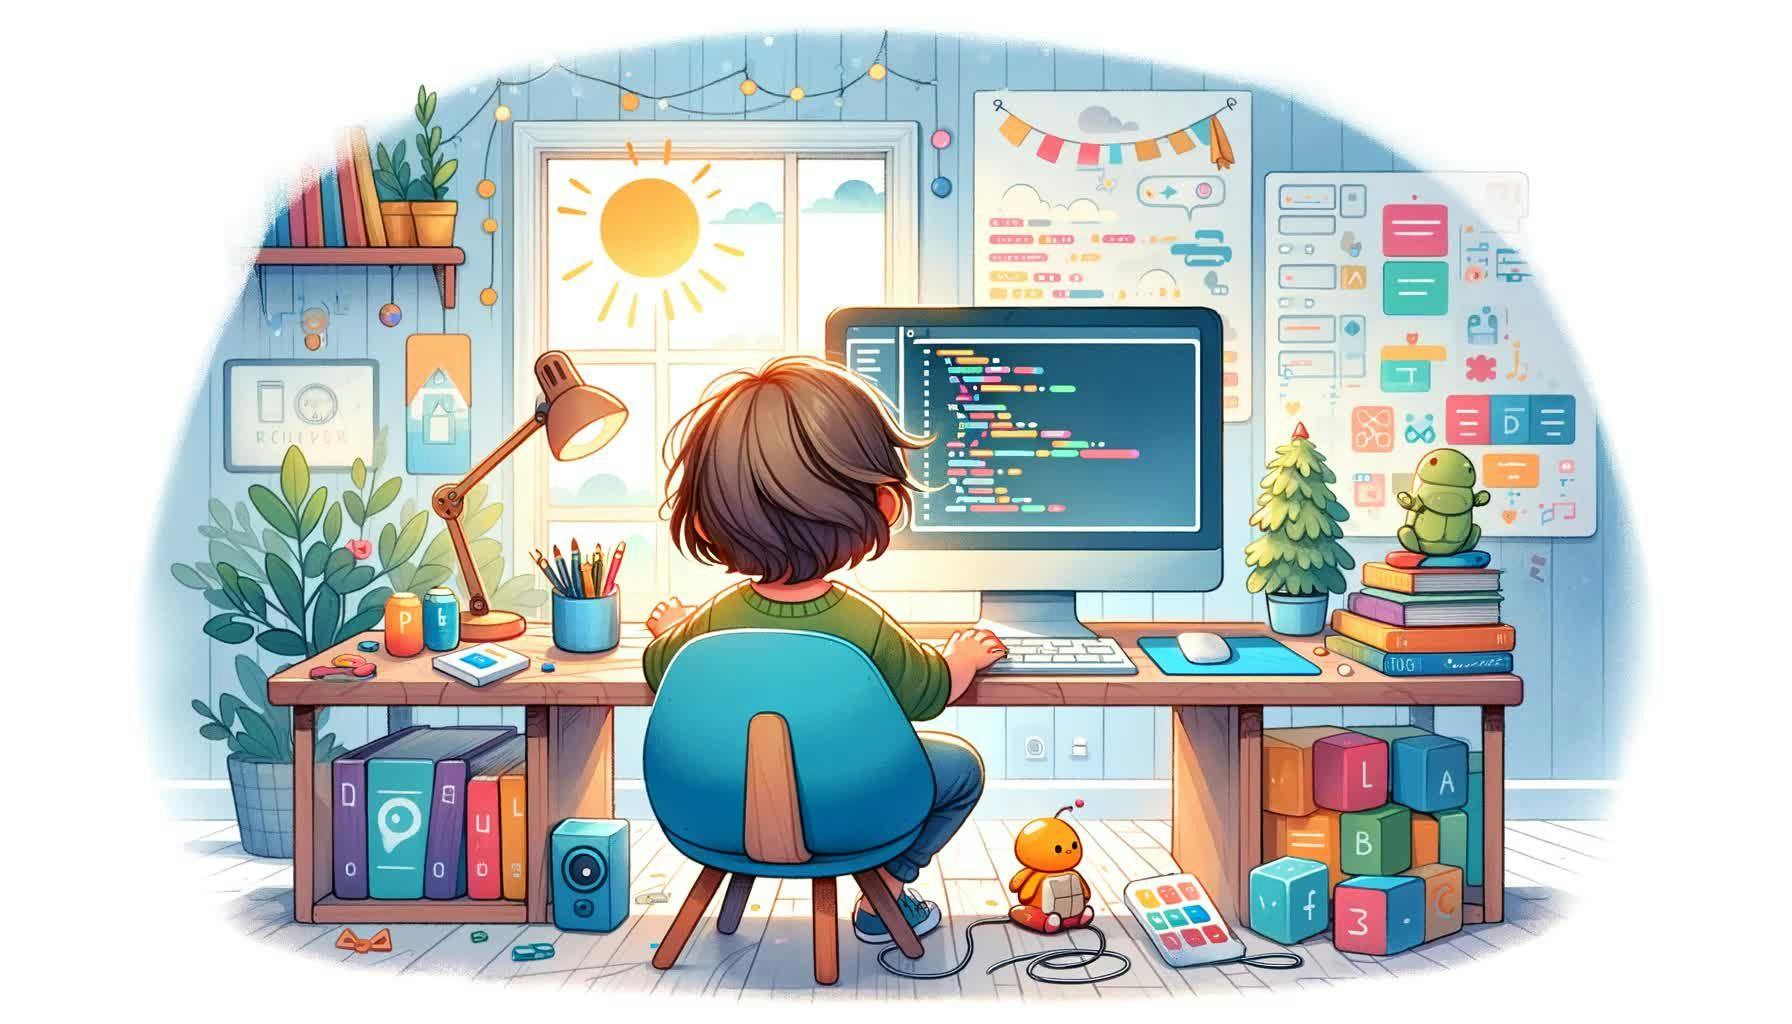 Dziecko, Programowanie dla dzieci, Scratch